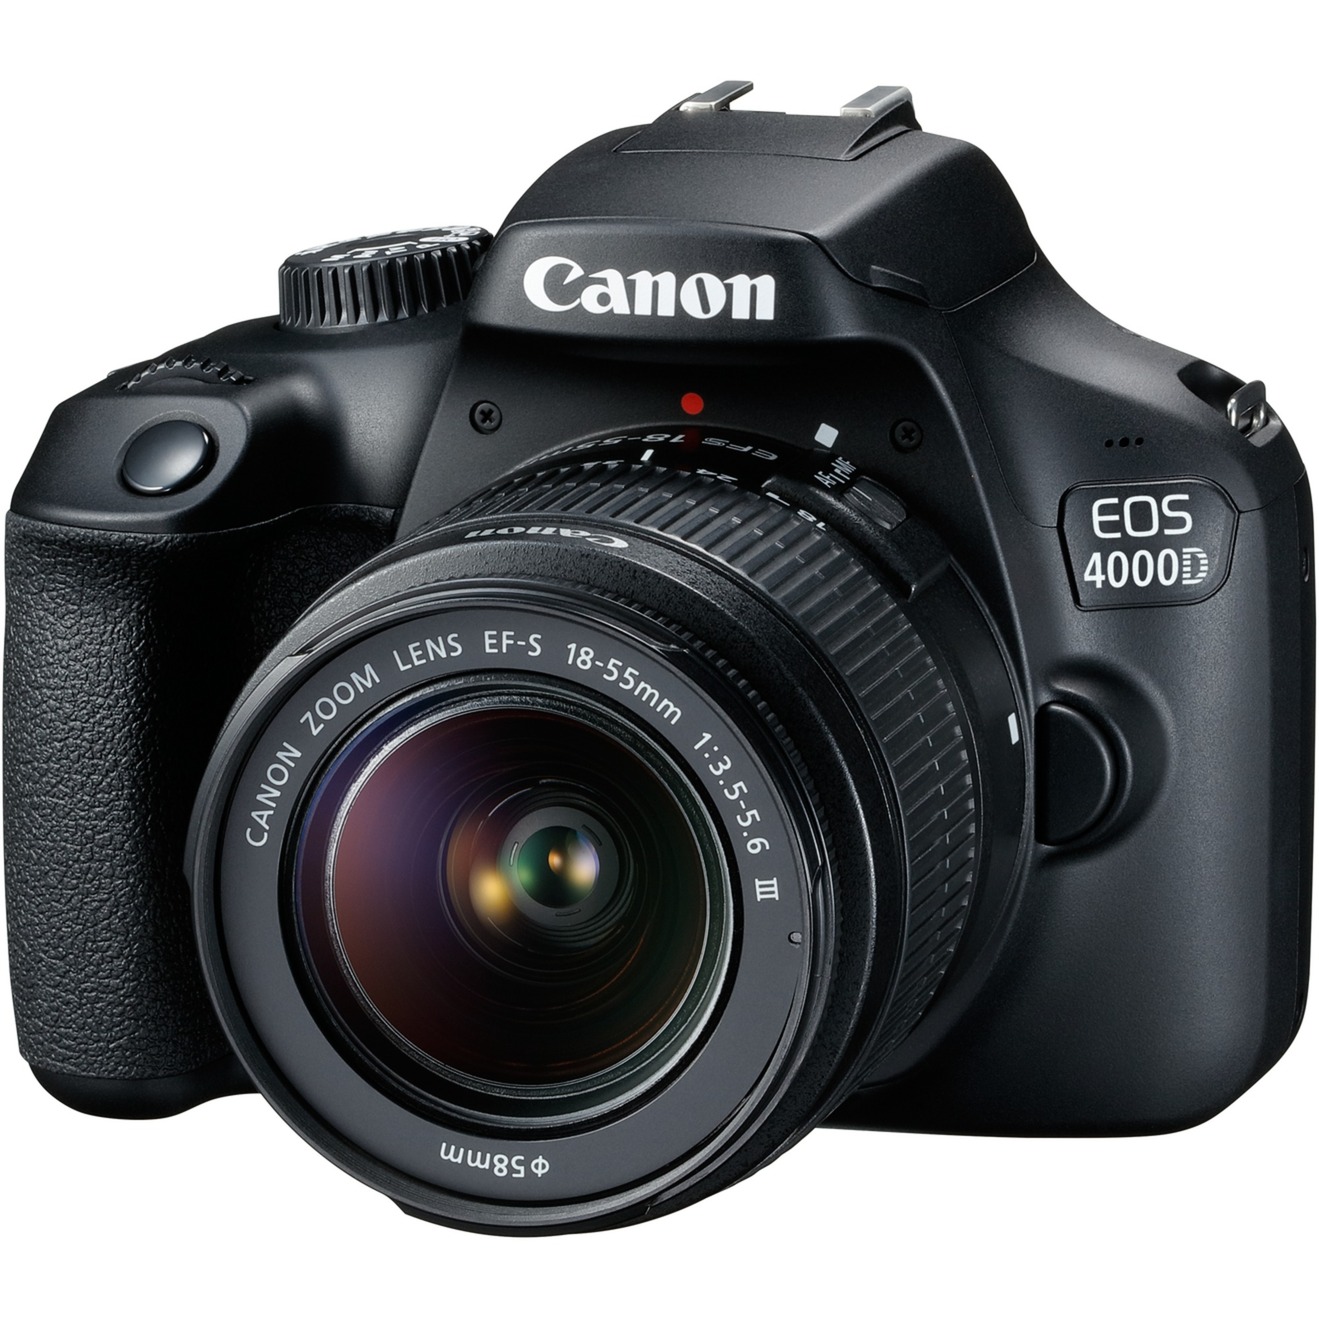 Image of Alternate - EOS 4000D KIT (18-55 mm III), Digitalkamera online einkaufen bei Alternate